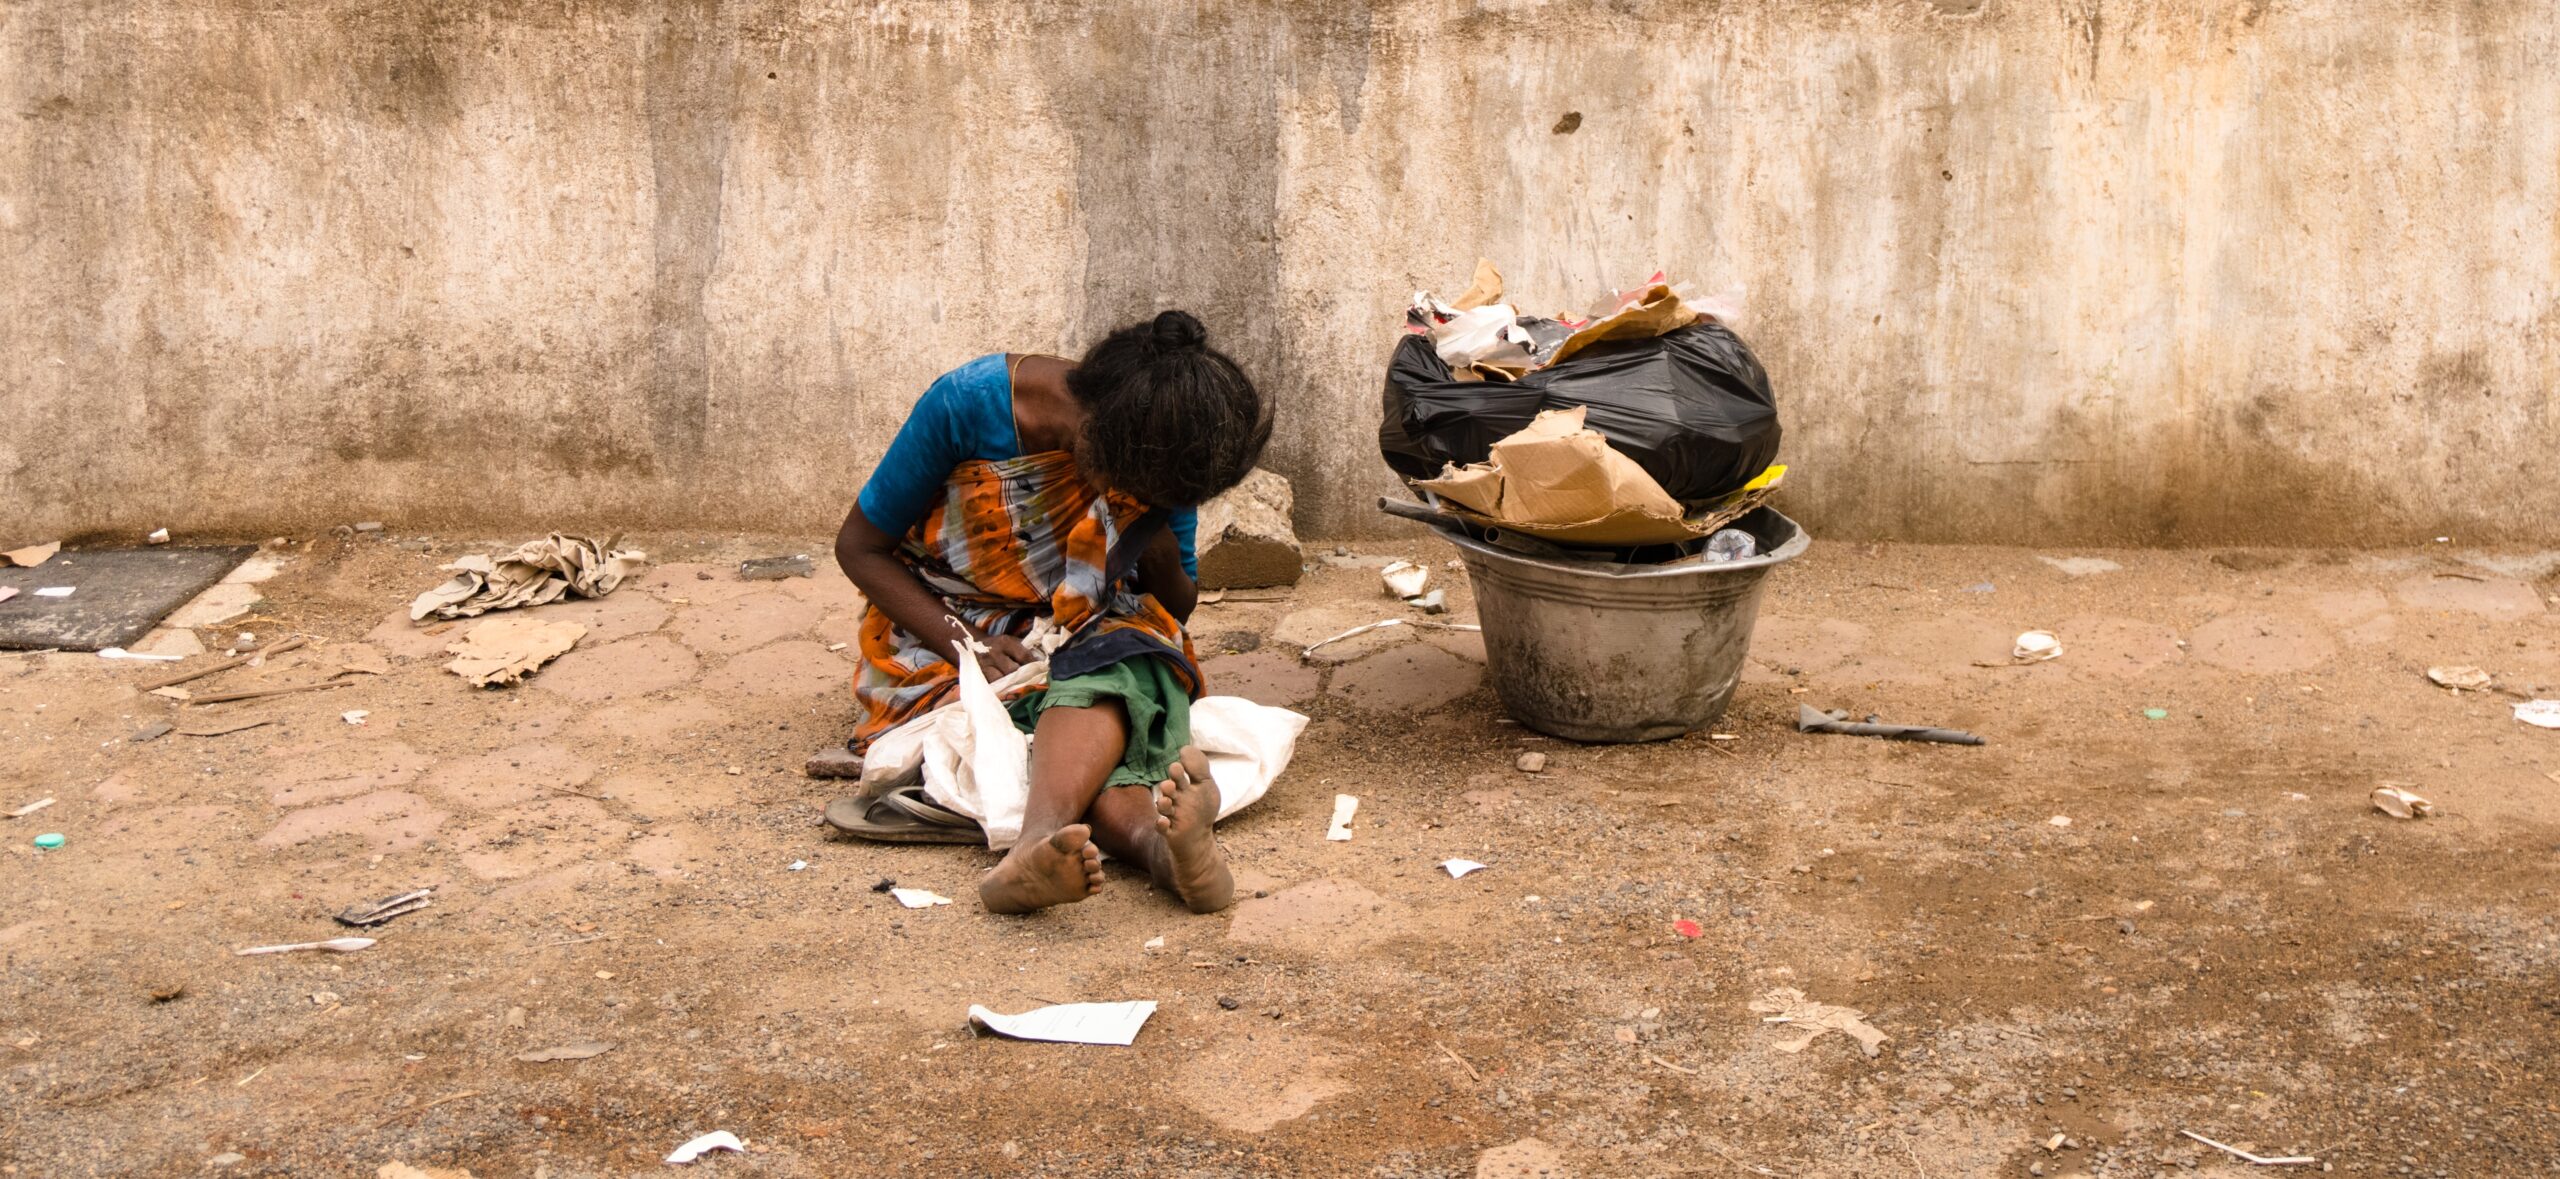 Παγκόσμια Τράπεζα: Ο κορονοϊός φέρνει 60 εκατομμύρια ανθρώπους στο όριο της φτώχειας